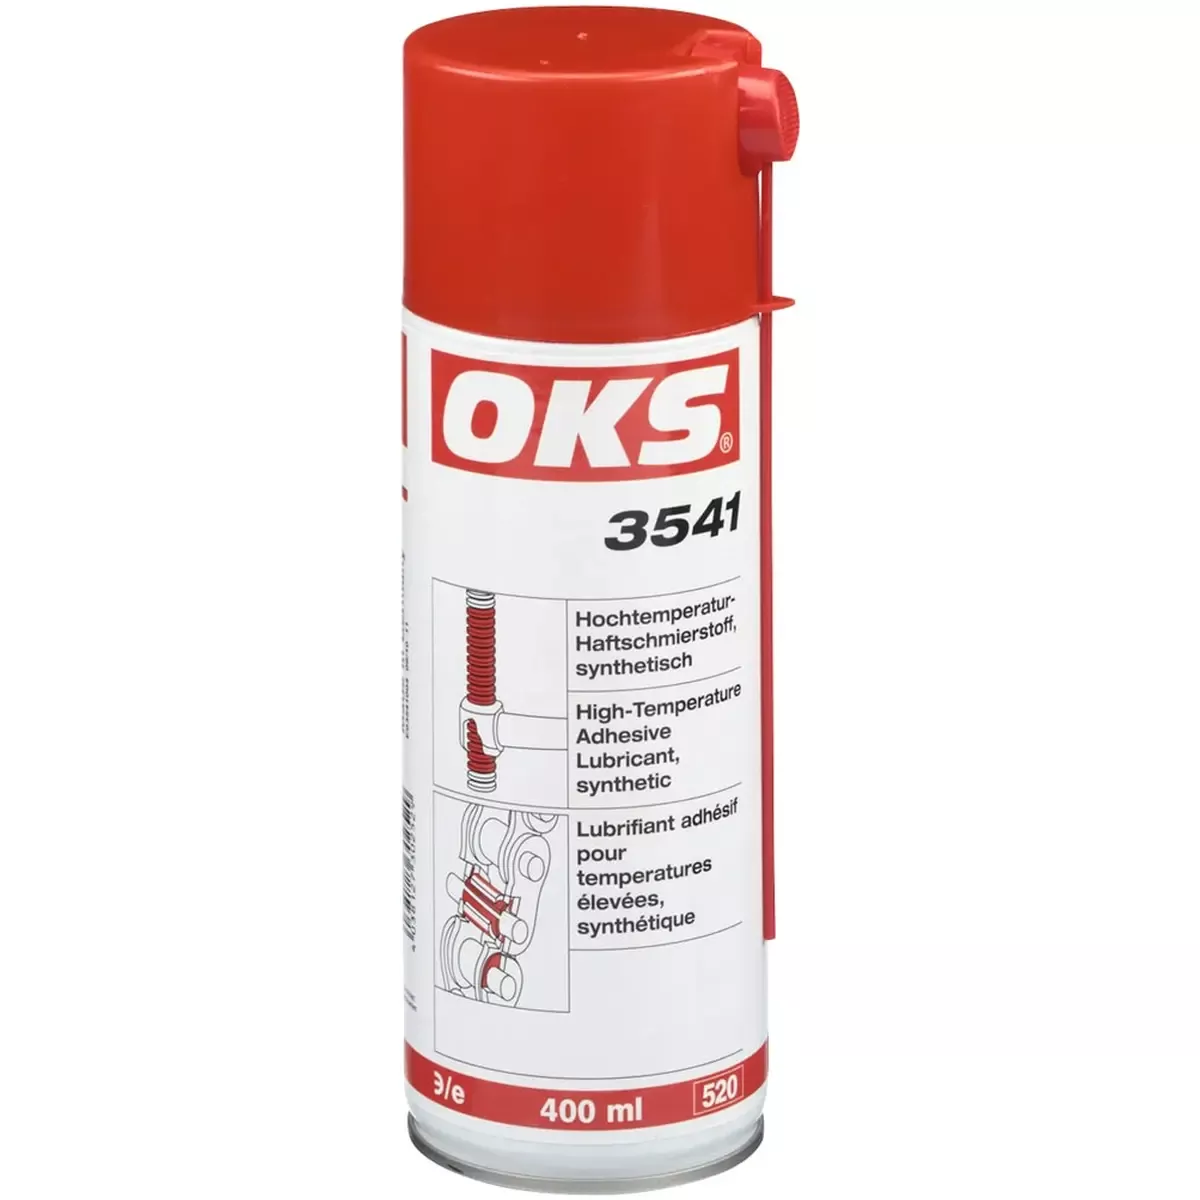 OKS 3541 Haftschmierstoff, Hochtemperatur, synthetisch, 400 ml Spray